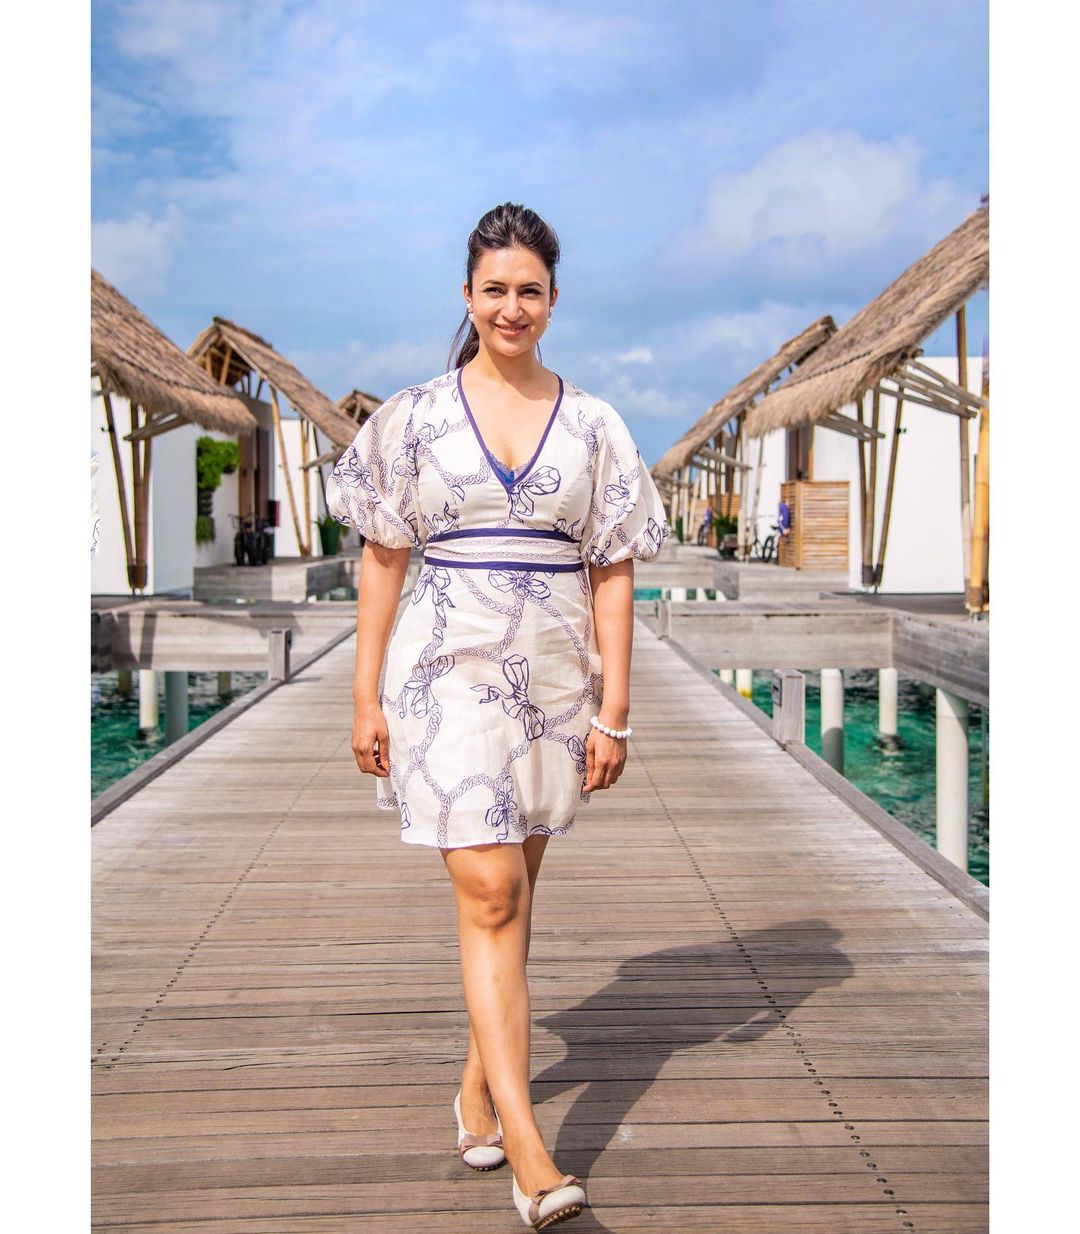 दिव्यांका त्रिपाठी की स्मार्ट शॉर्ट ड्रेसेज़ | Divyanka Tripathi Short Dress  Look